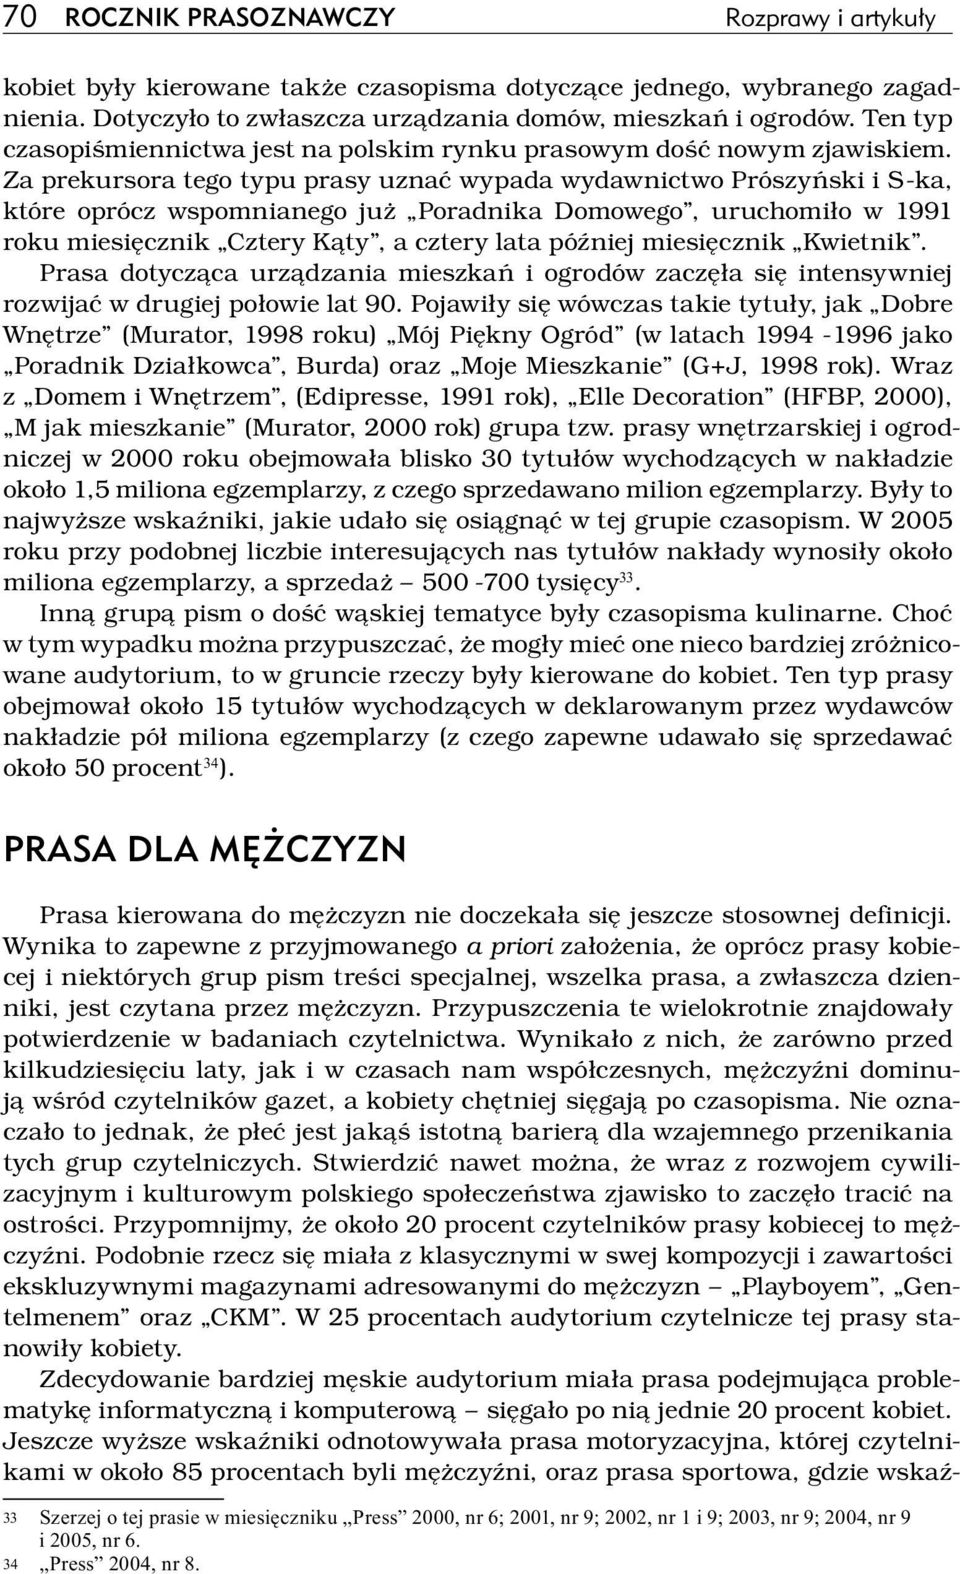 Za prekursora tego typu prasy uznać wypada wydawnictwo Prószyński i S ka, które oprócz wspomnianego już Poradnika Domowego, uruchomiło w 1991 roku miesięcznik Cztery Kąty, a cztery lata później